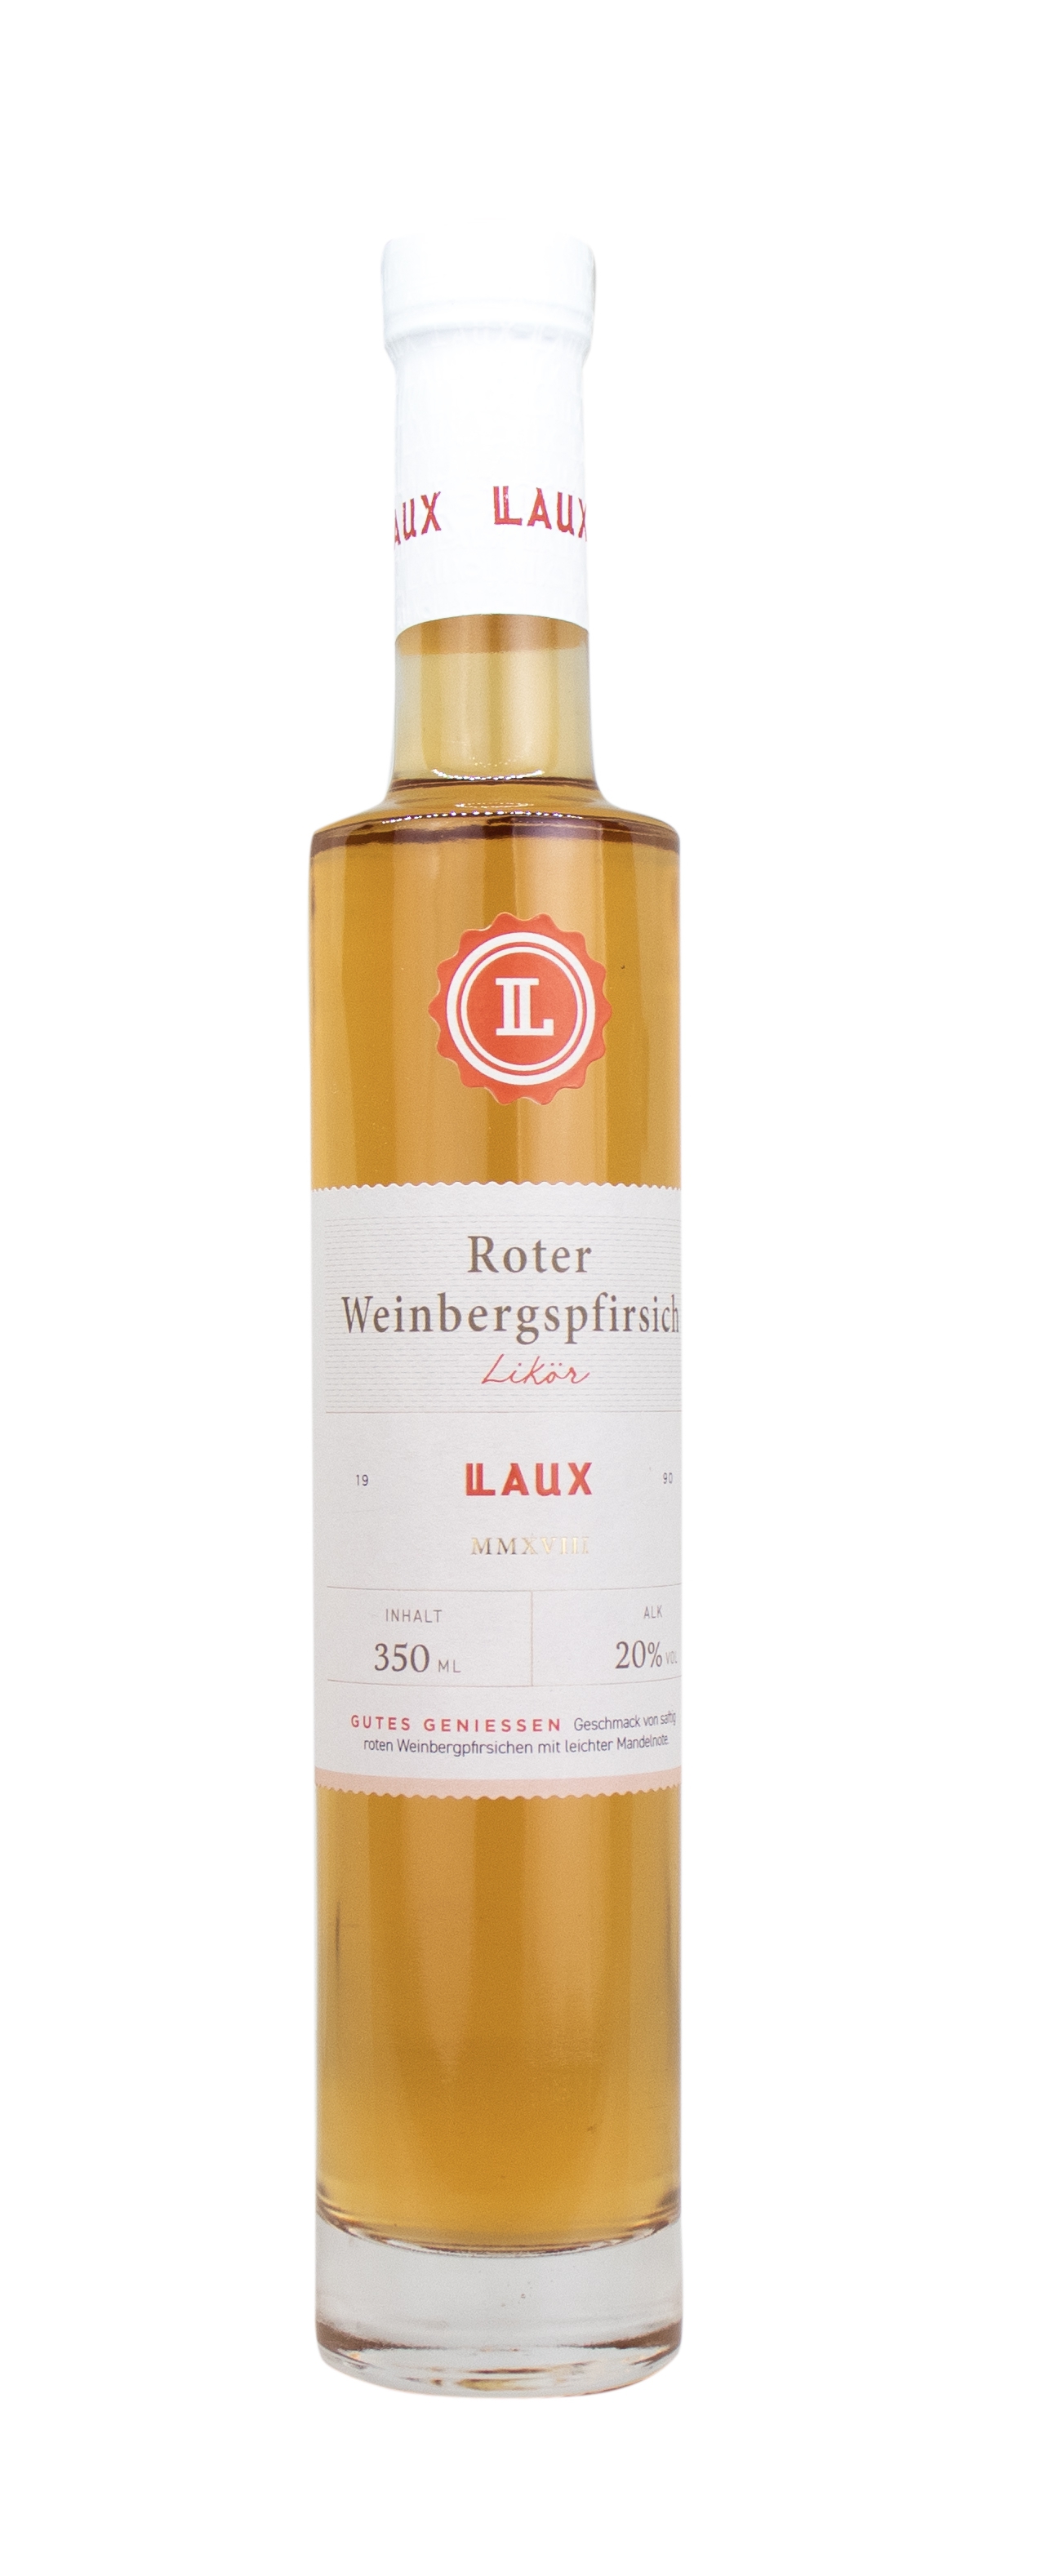 Roter Weinbergspfirsich Likör in 350 ml Flasche